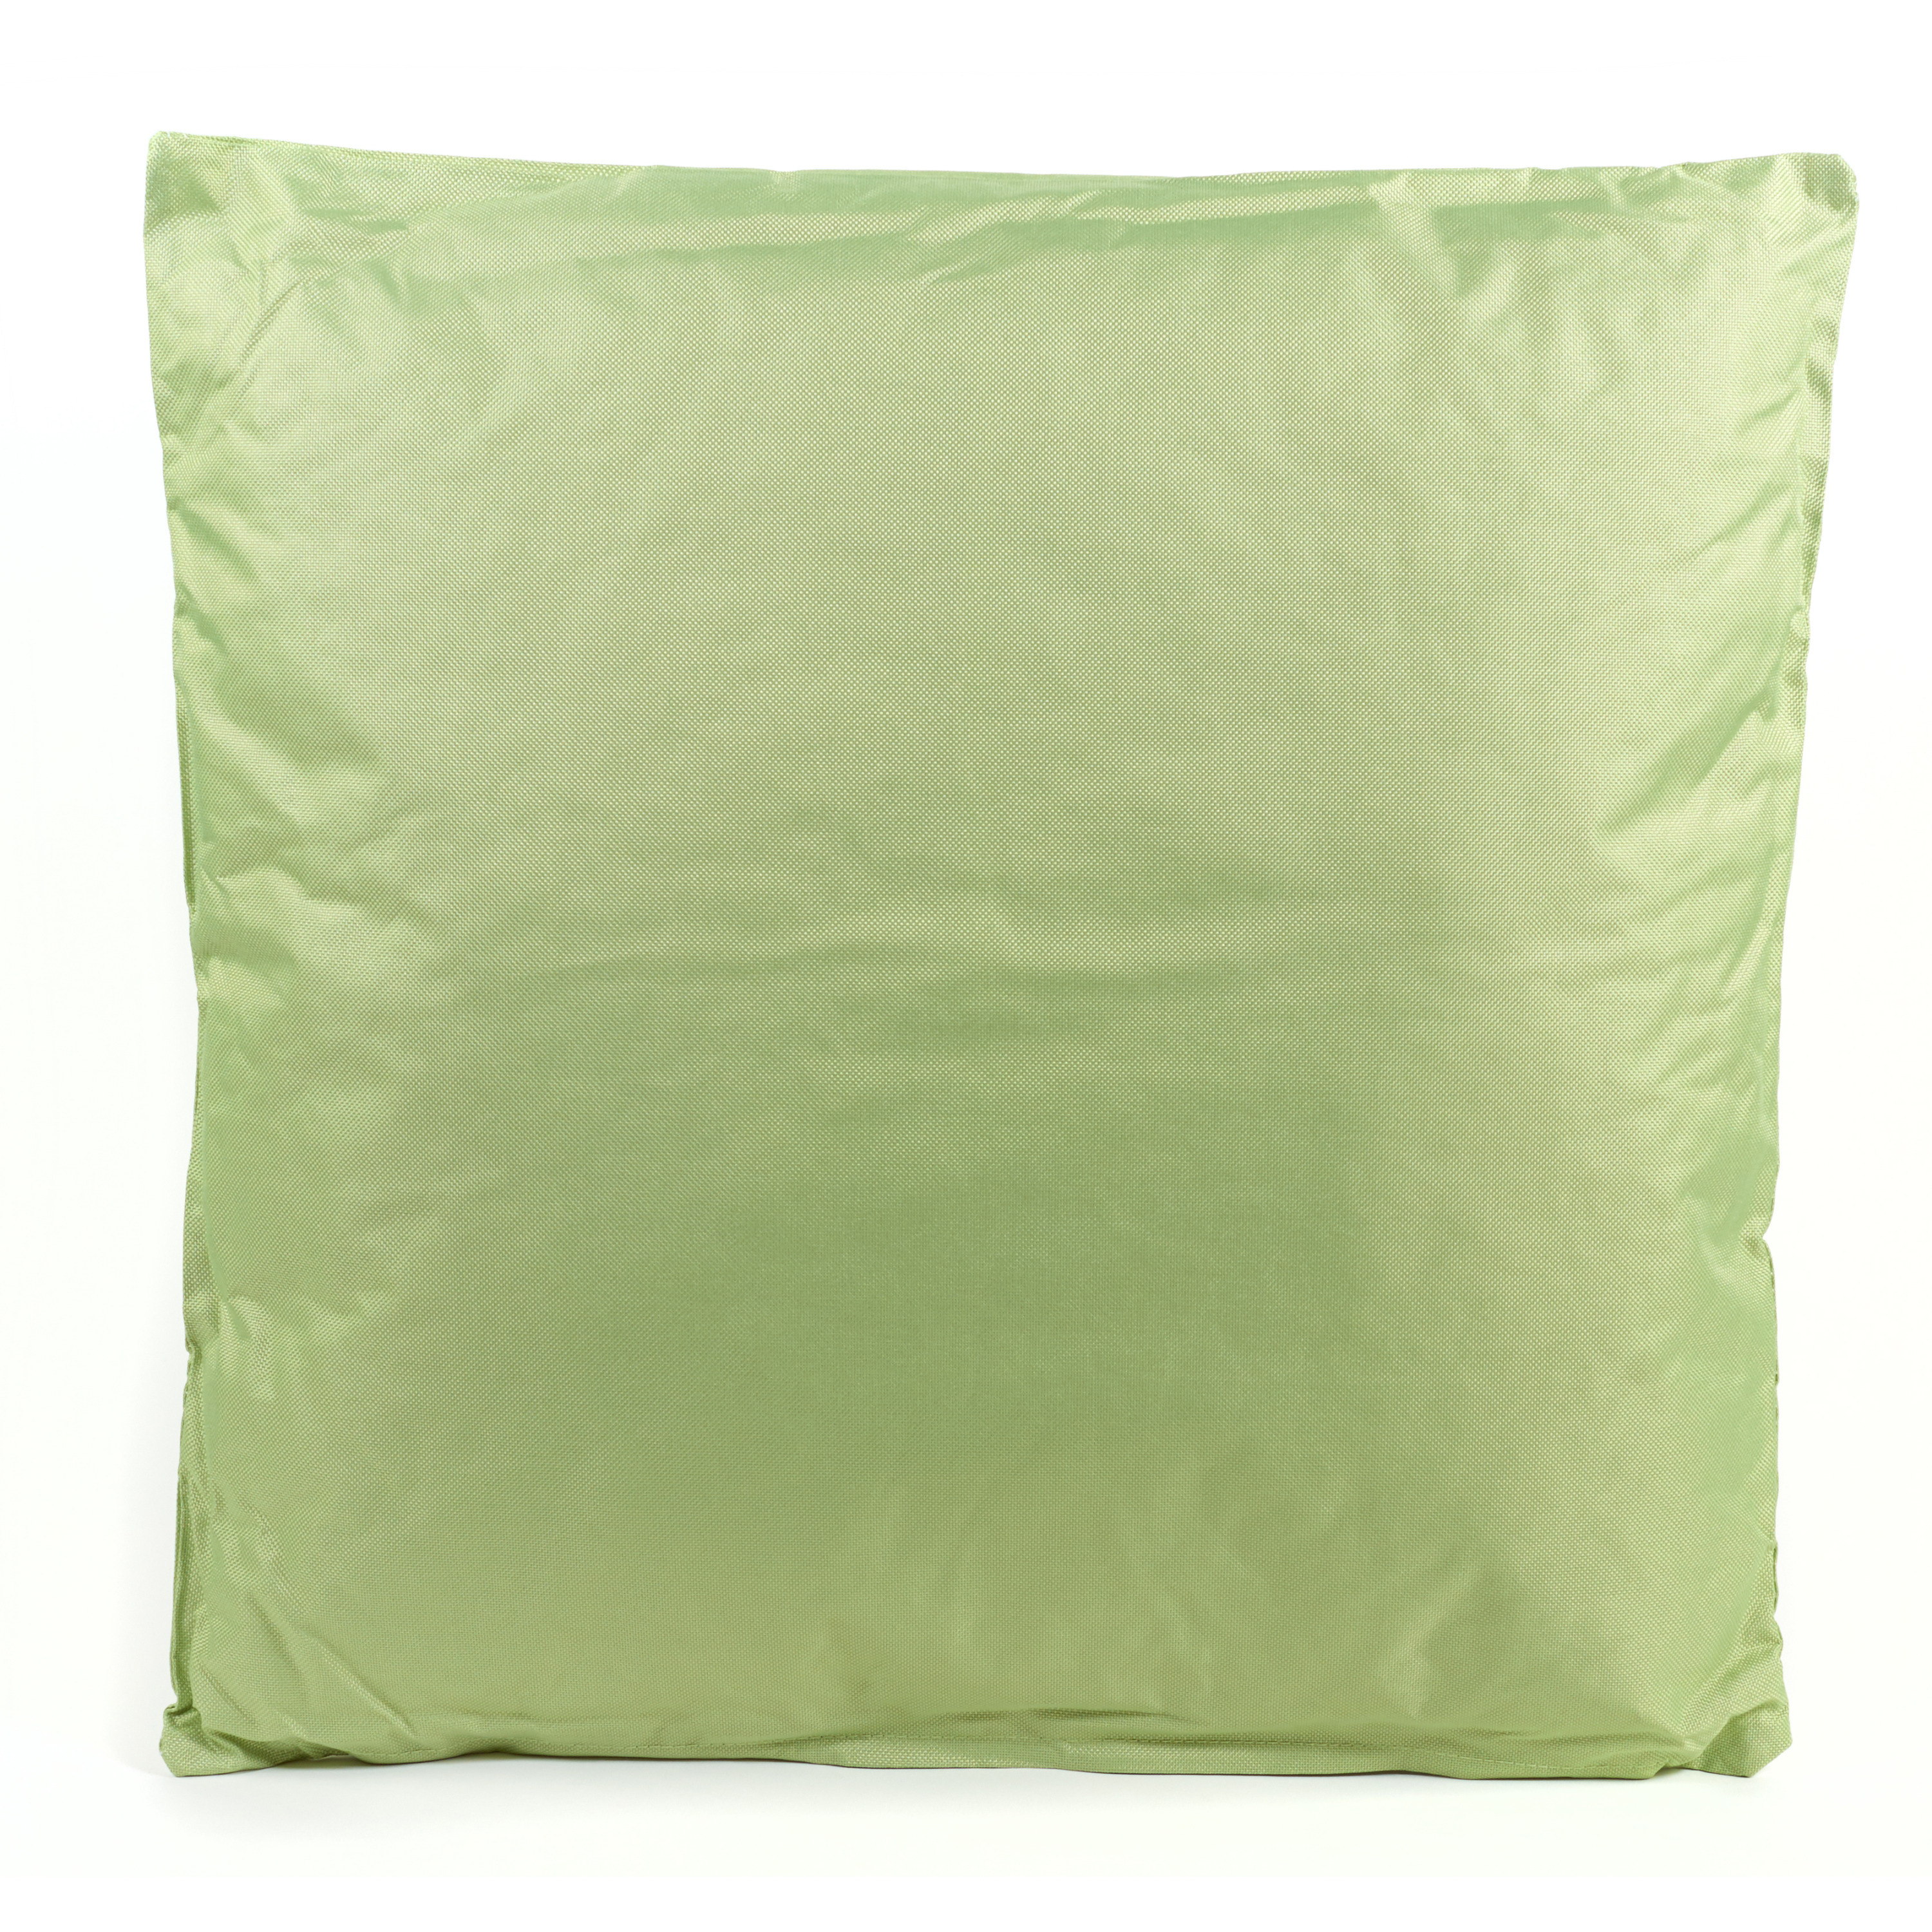 Buitenkussens Mint groen 60 x 60 cm binnen-buiten